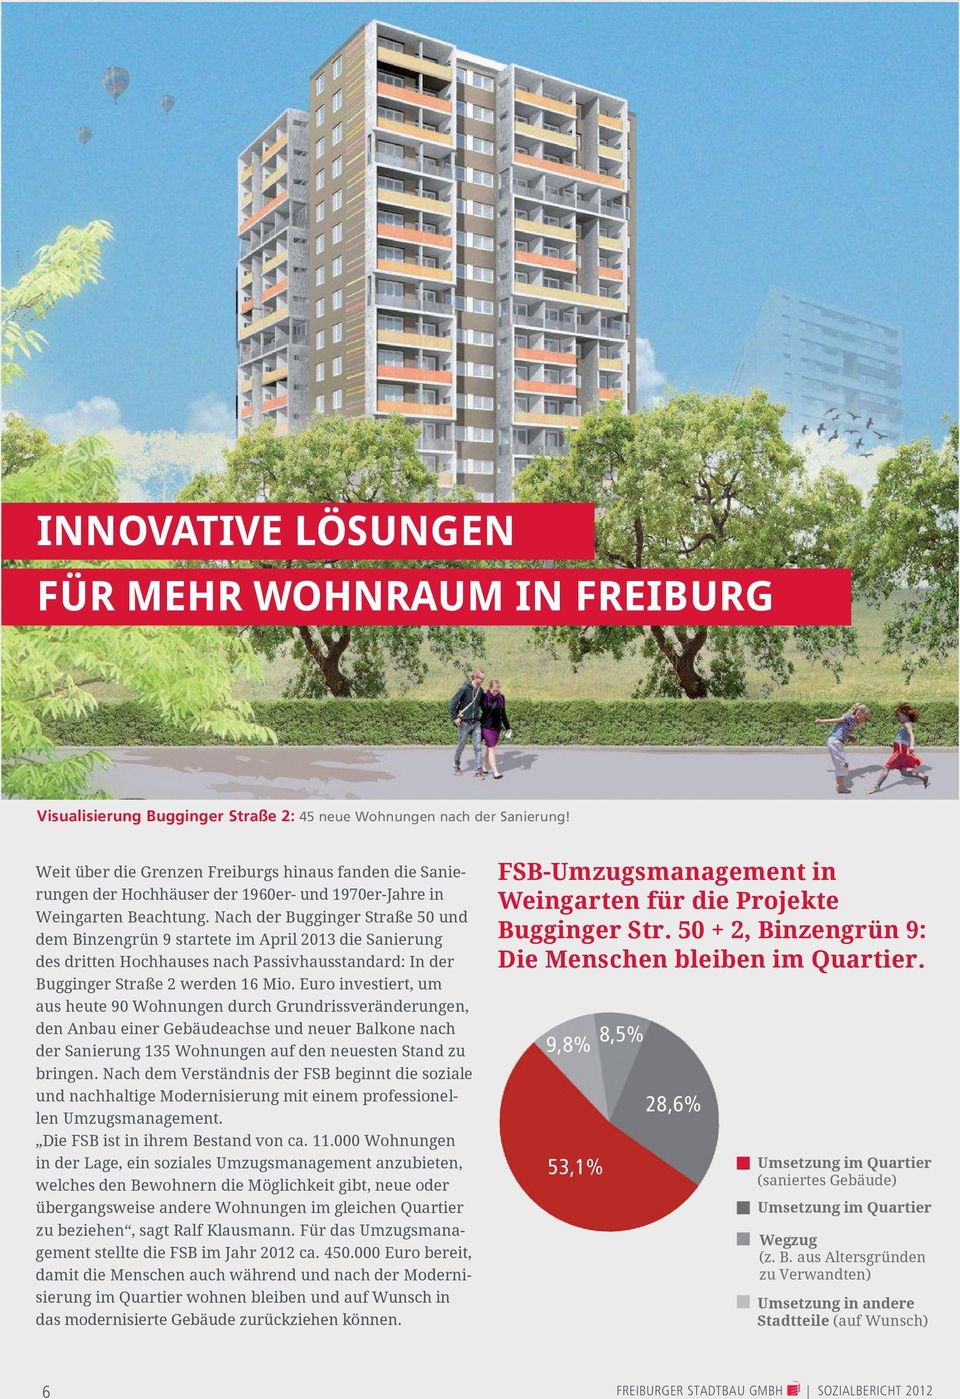 Nach der Bugginger Straße 50 und dem Binzengrün 9 startete im April 2013 die Sanierung des dritten Hochhauses nach Passivhausstandard: In der Bugginger Straße 2 werden 16 Mio.